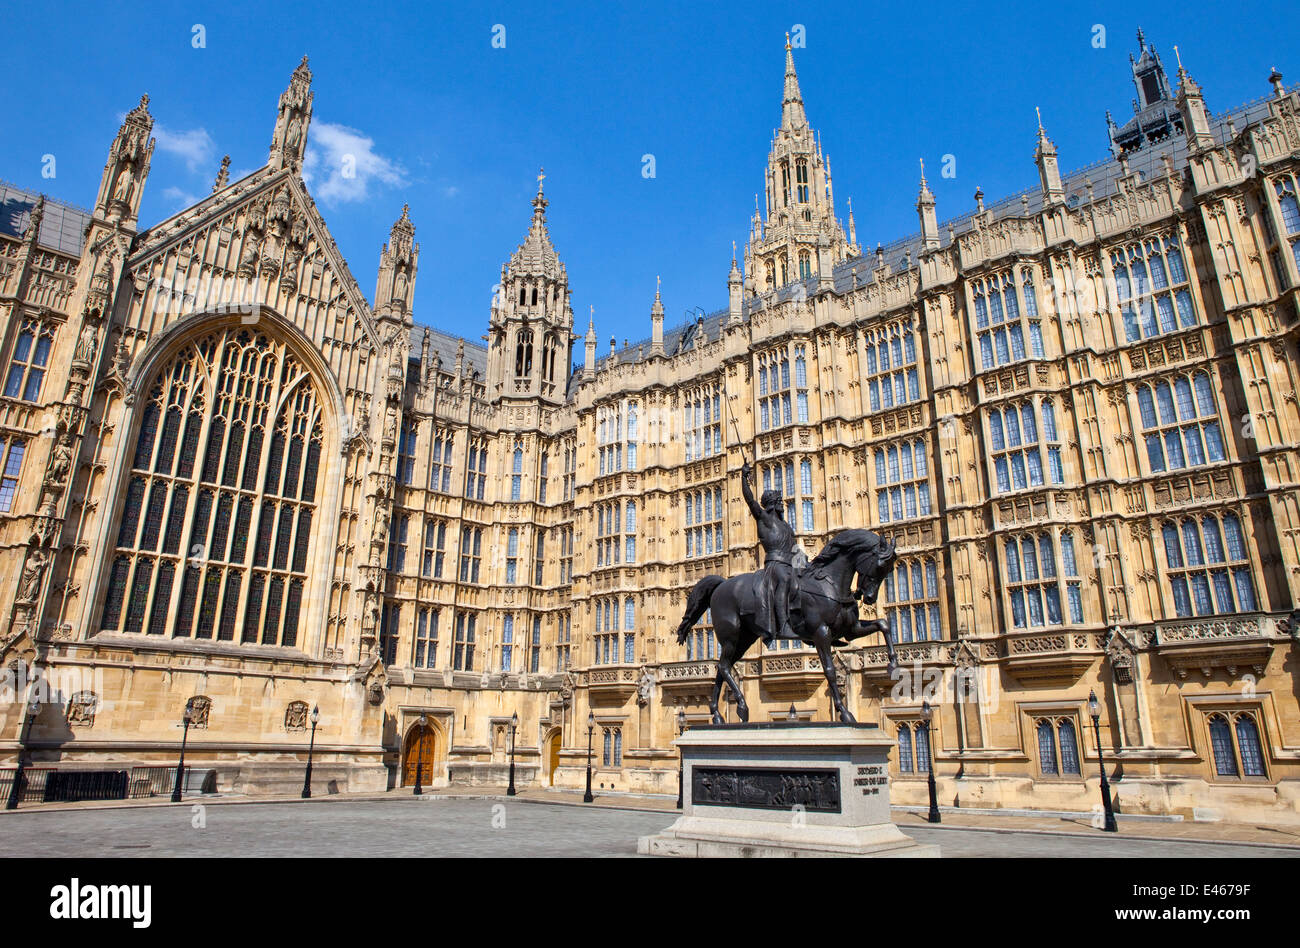 Une statue du roi Richard I (également connu sous le nom de Richard Coeur de Lion) extérieur les chambres du Parlement à Londres. Banque D'Images